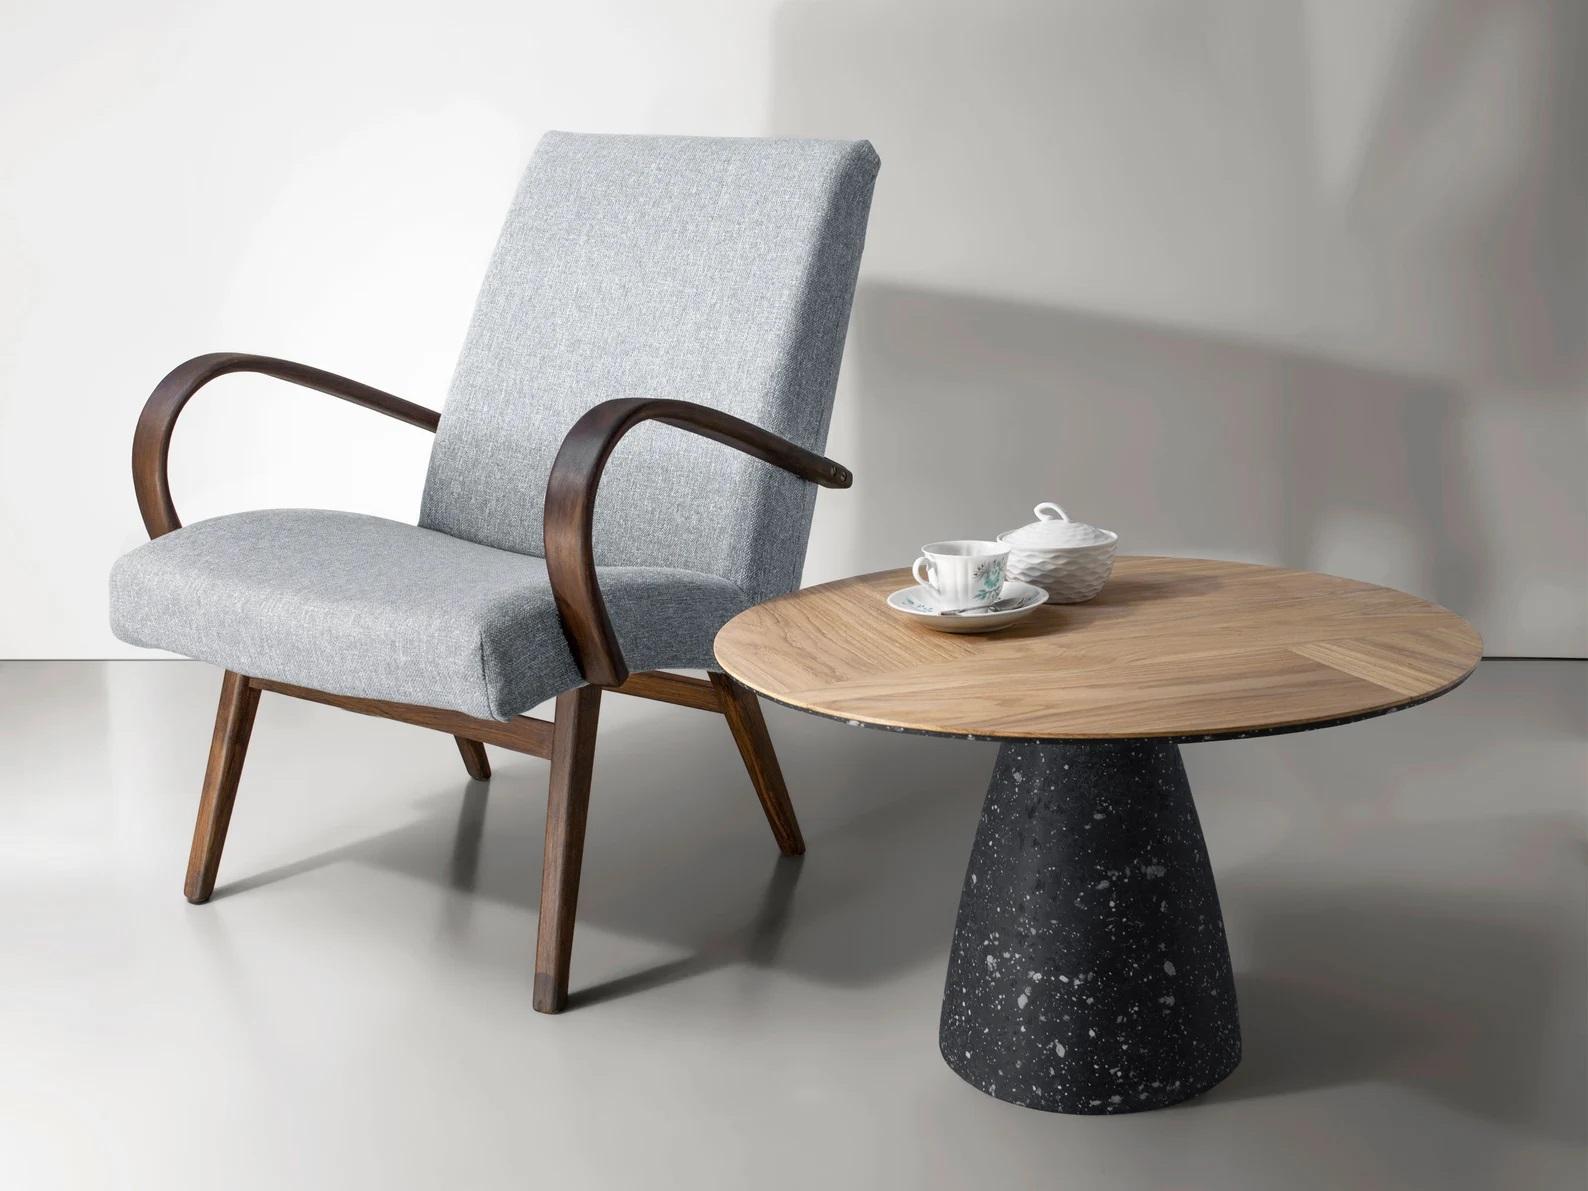 Table basse moderne par Kasanai
Dimensions : D 63 x H 40 cm.
MATERIAL : Chêne, ciment, papier recyclé, colle, peinture.
15 kg.

L'inspiration visuelle de la table basse est une combinaison de bois naturel et de béton. Ces deux matériaux opposés